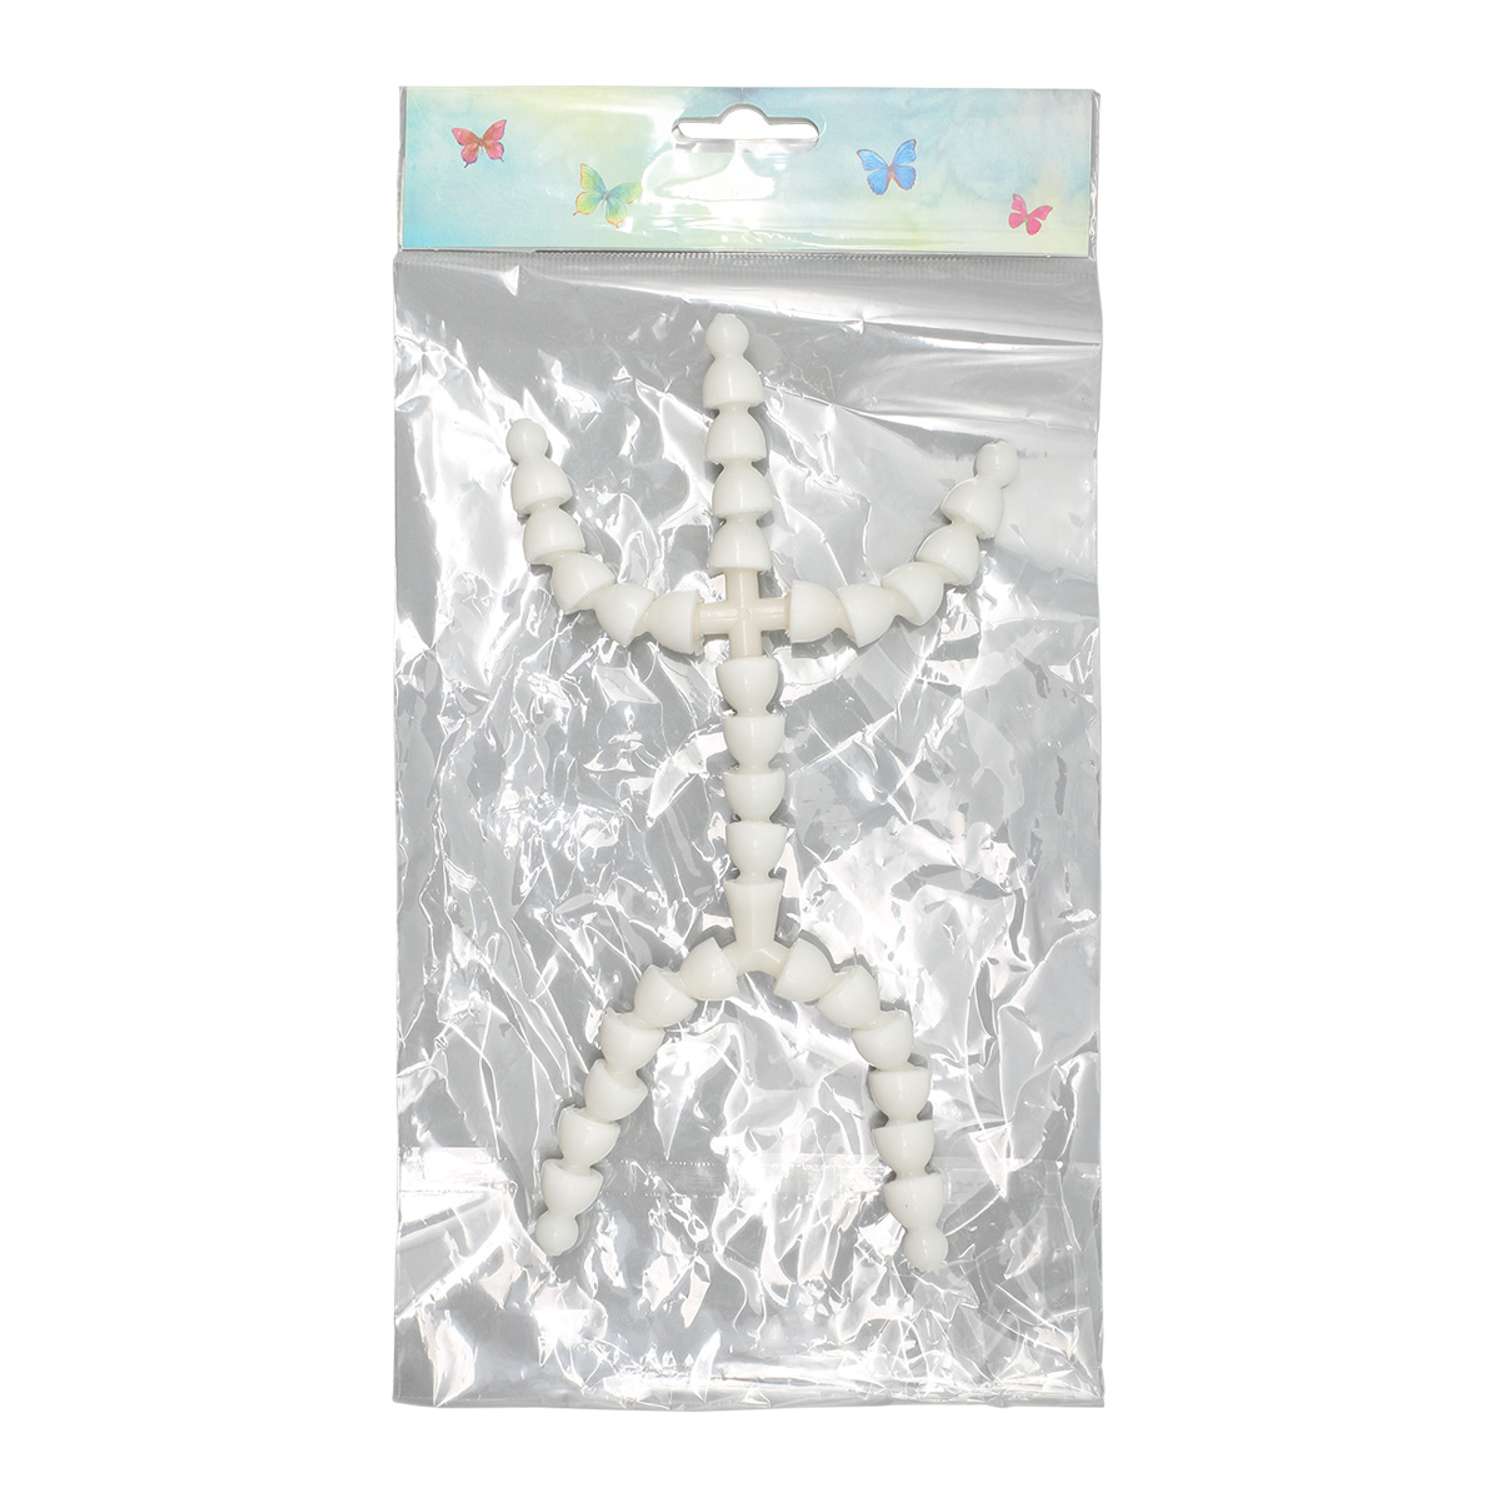 Скелет - каркас для игрушки Совушка готовый гибкий пластиковый Lock - line 19 см руки 6 см ноги 7 см - фото 2